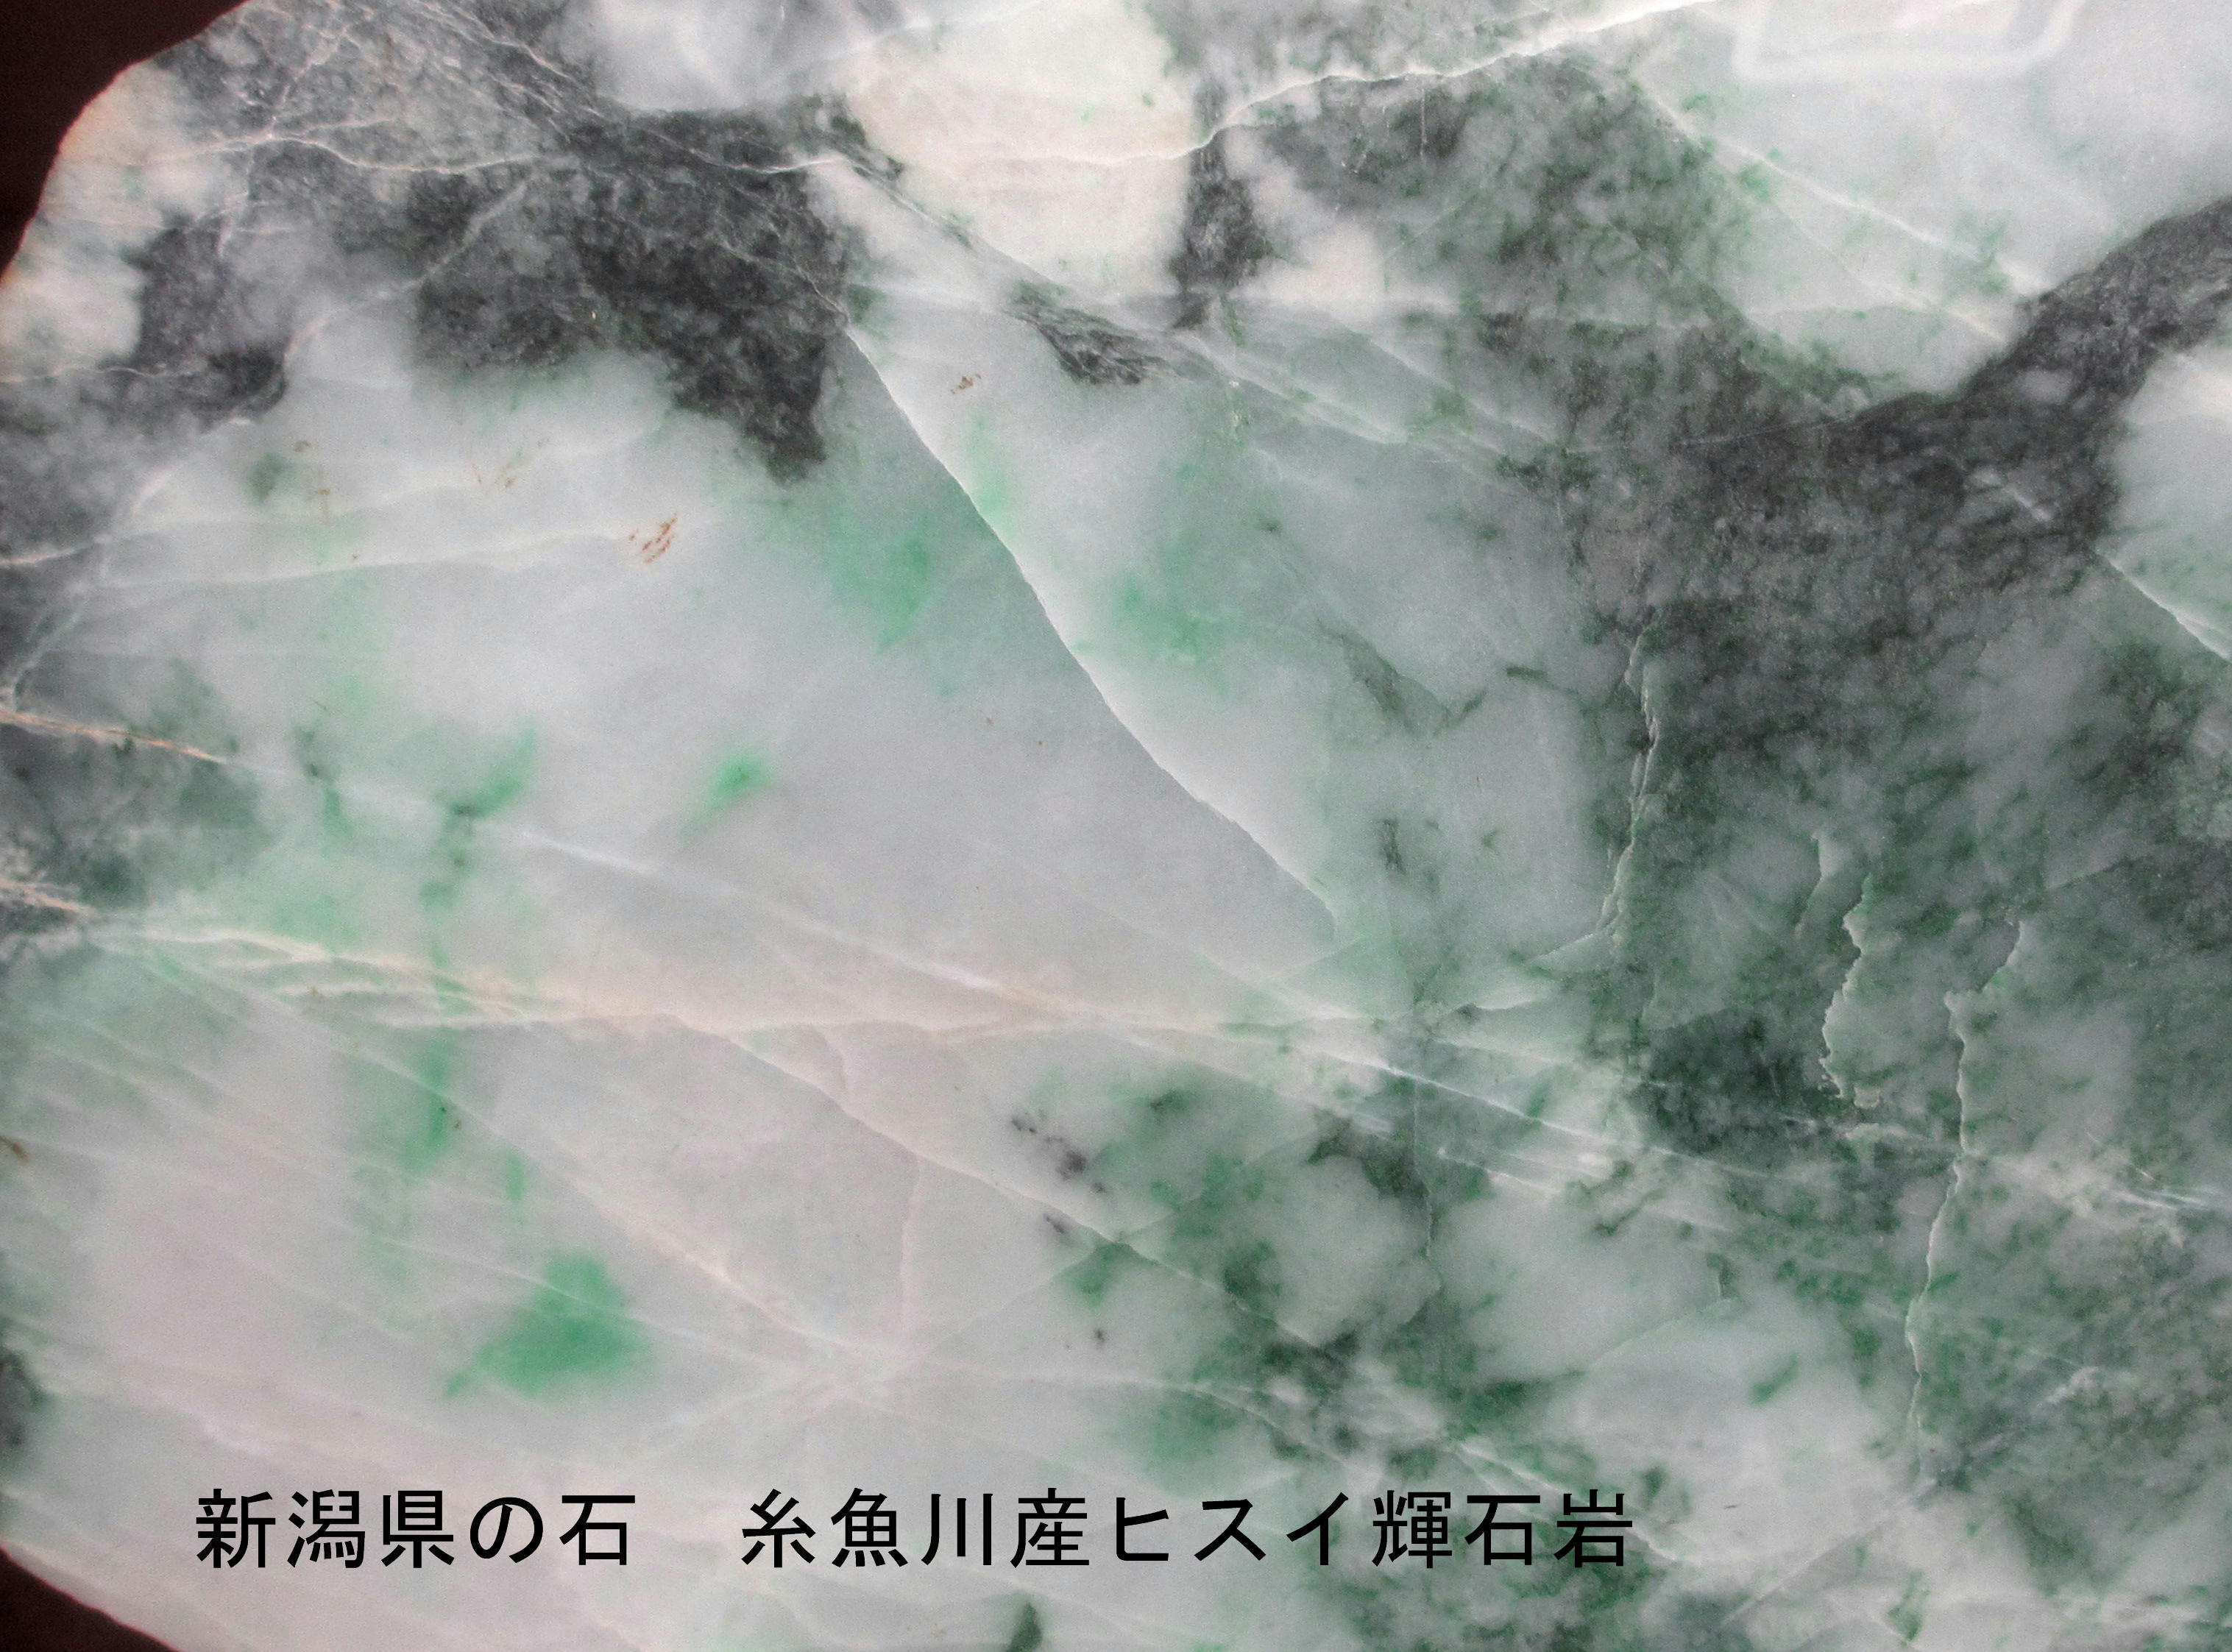 県石となった糸魚川産ヒスイ(2) 県石と国石 | 糸魚川ジオパークの